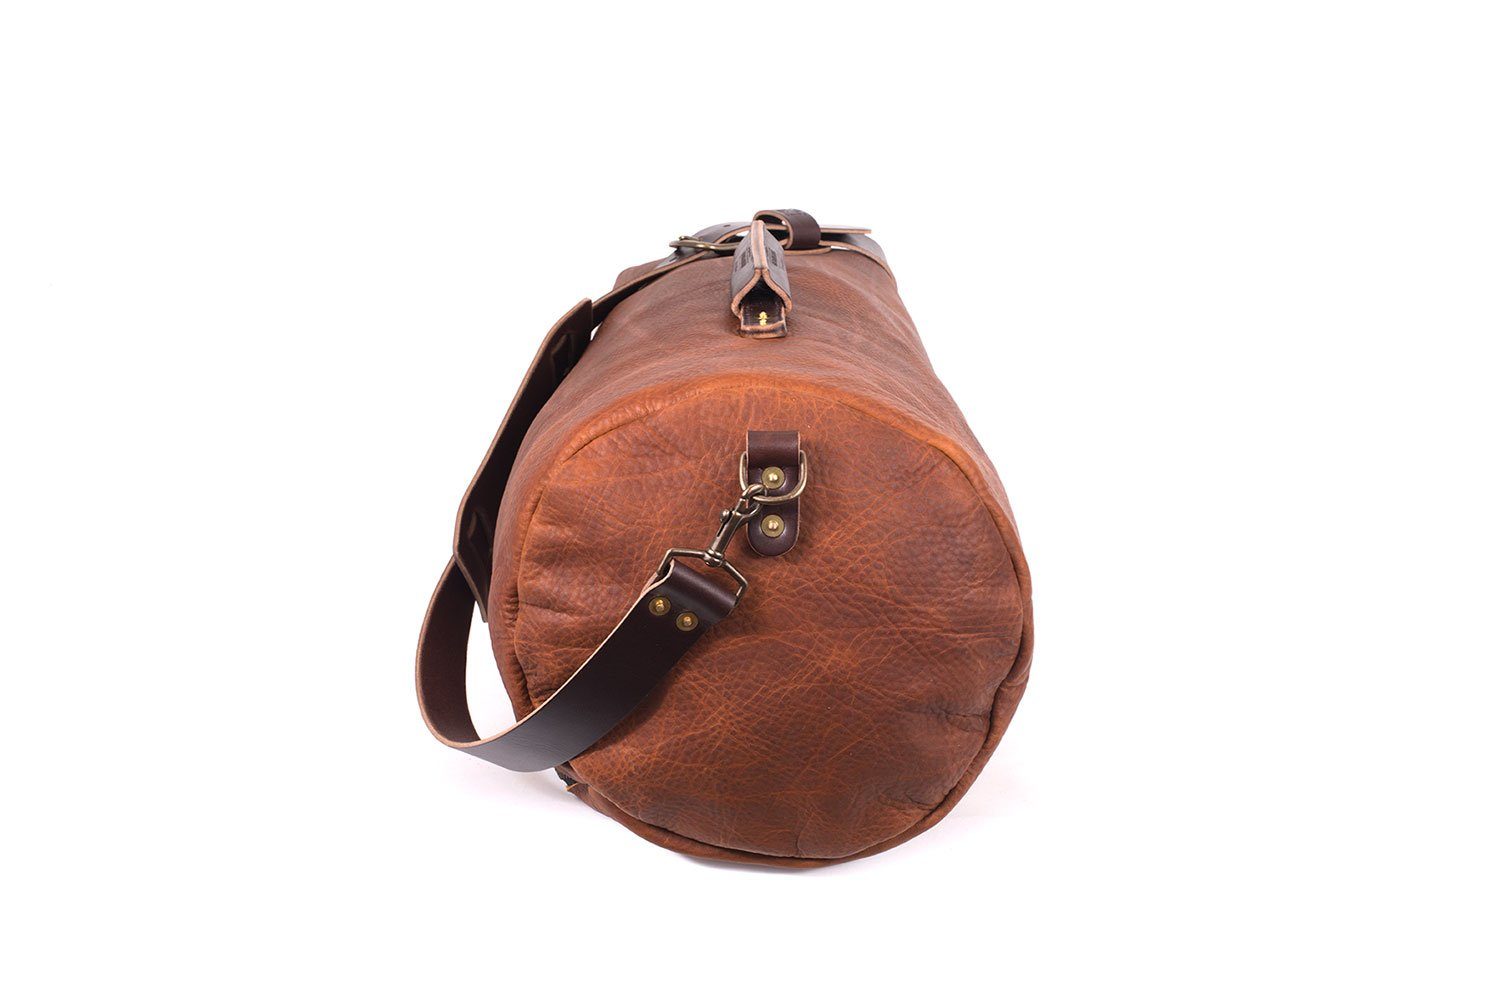 MEERWERK made of felt & leather - small duffel as sports- or gym bag -  werktat